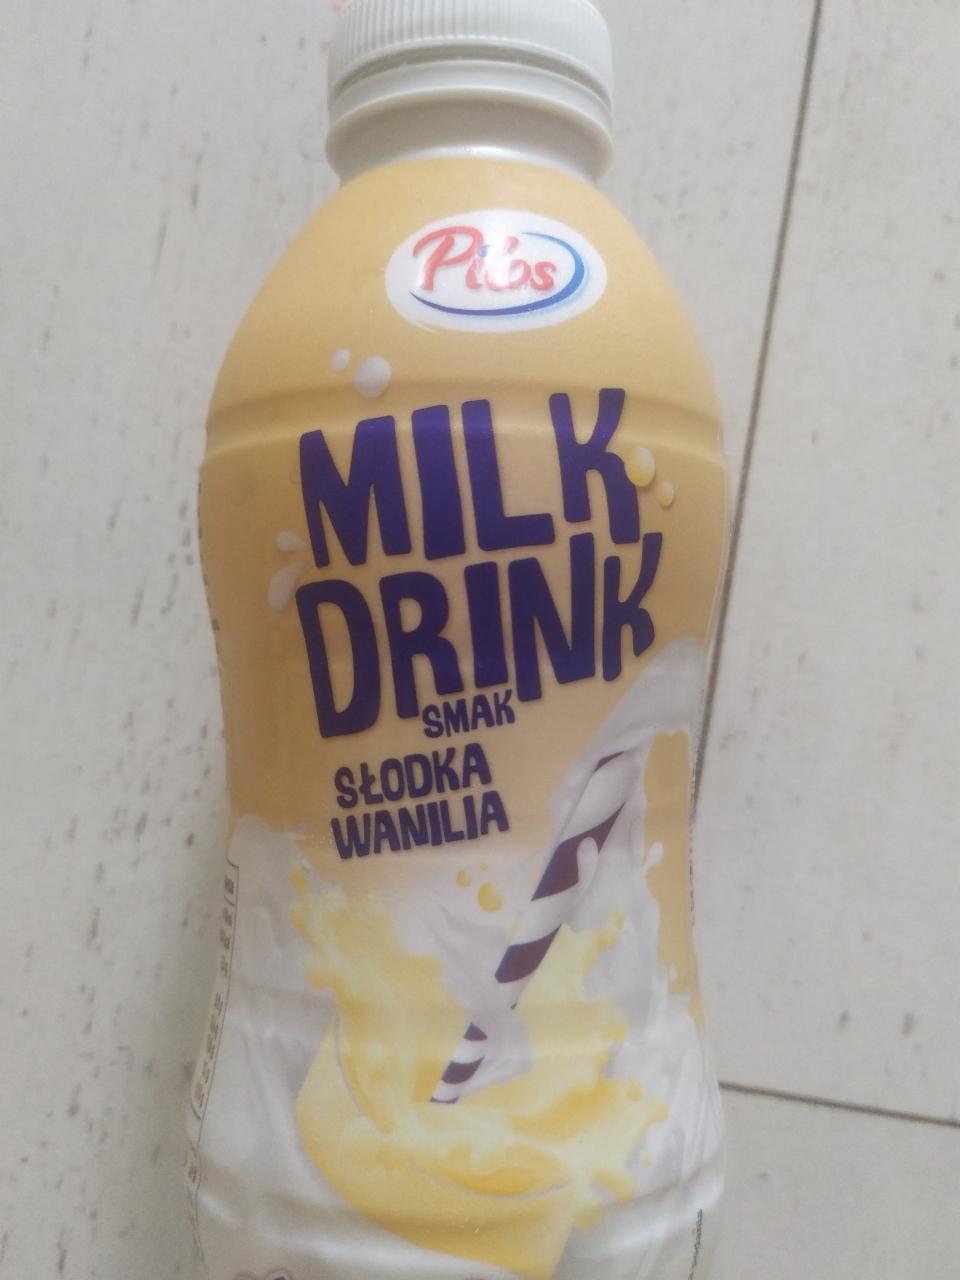 Zdjęcia - milk drink smak słodka wanilia pilos